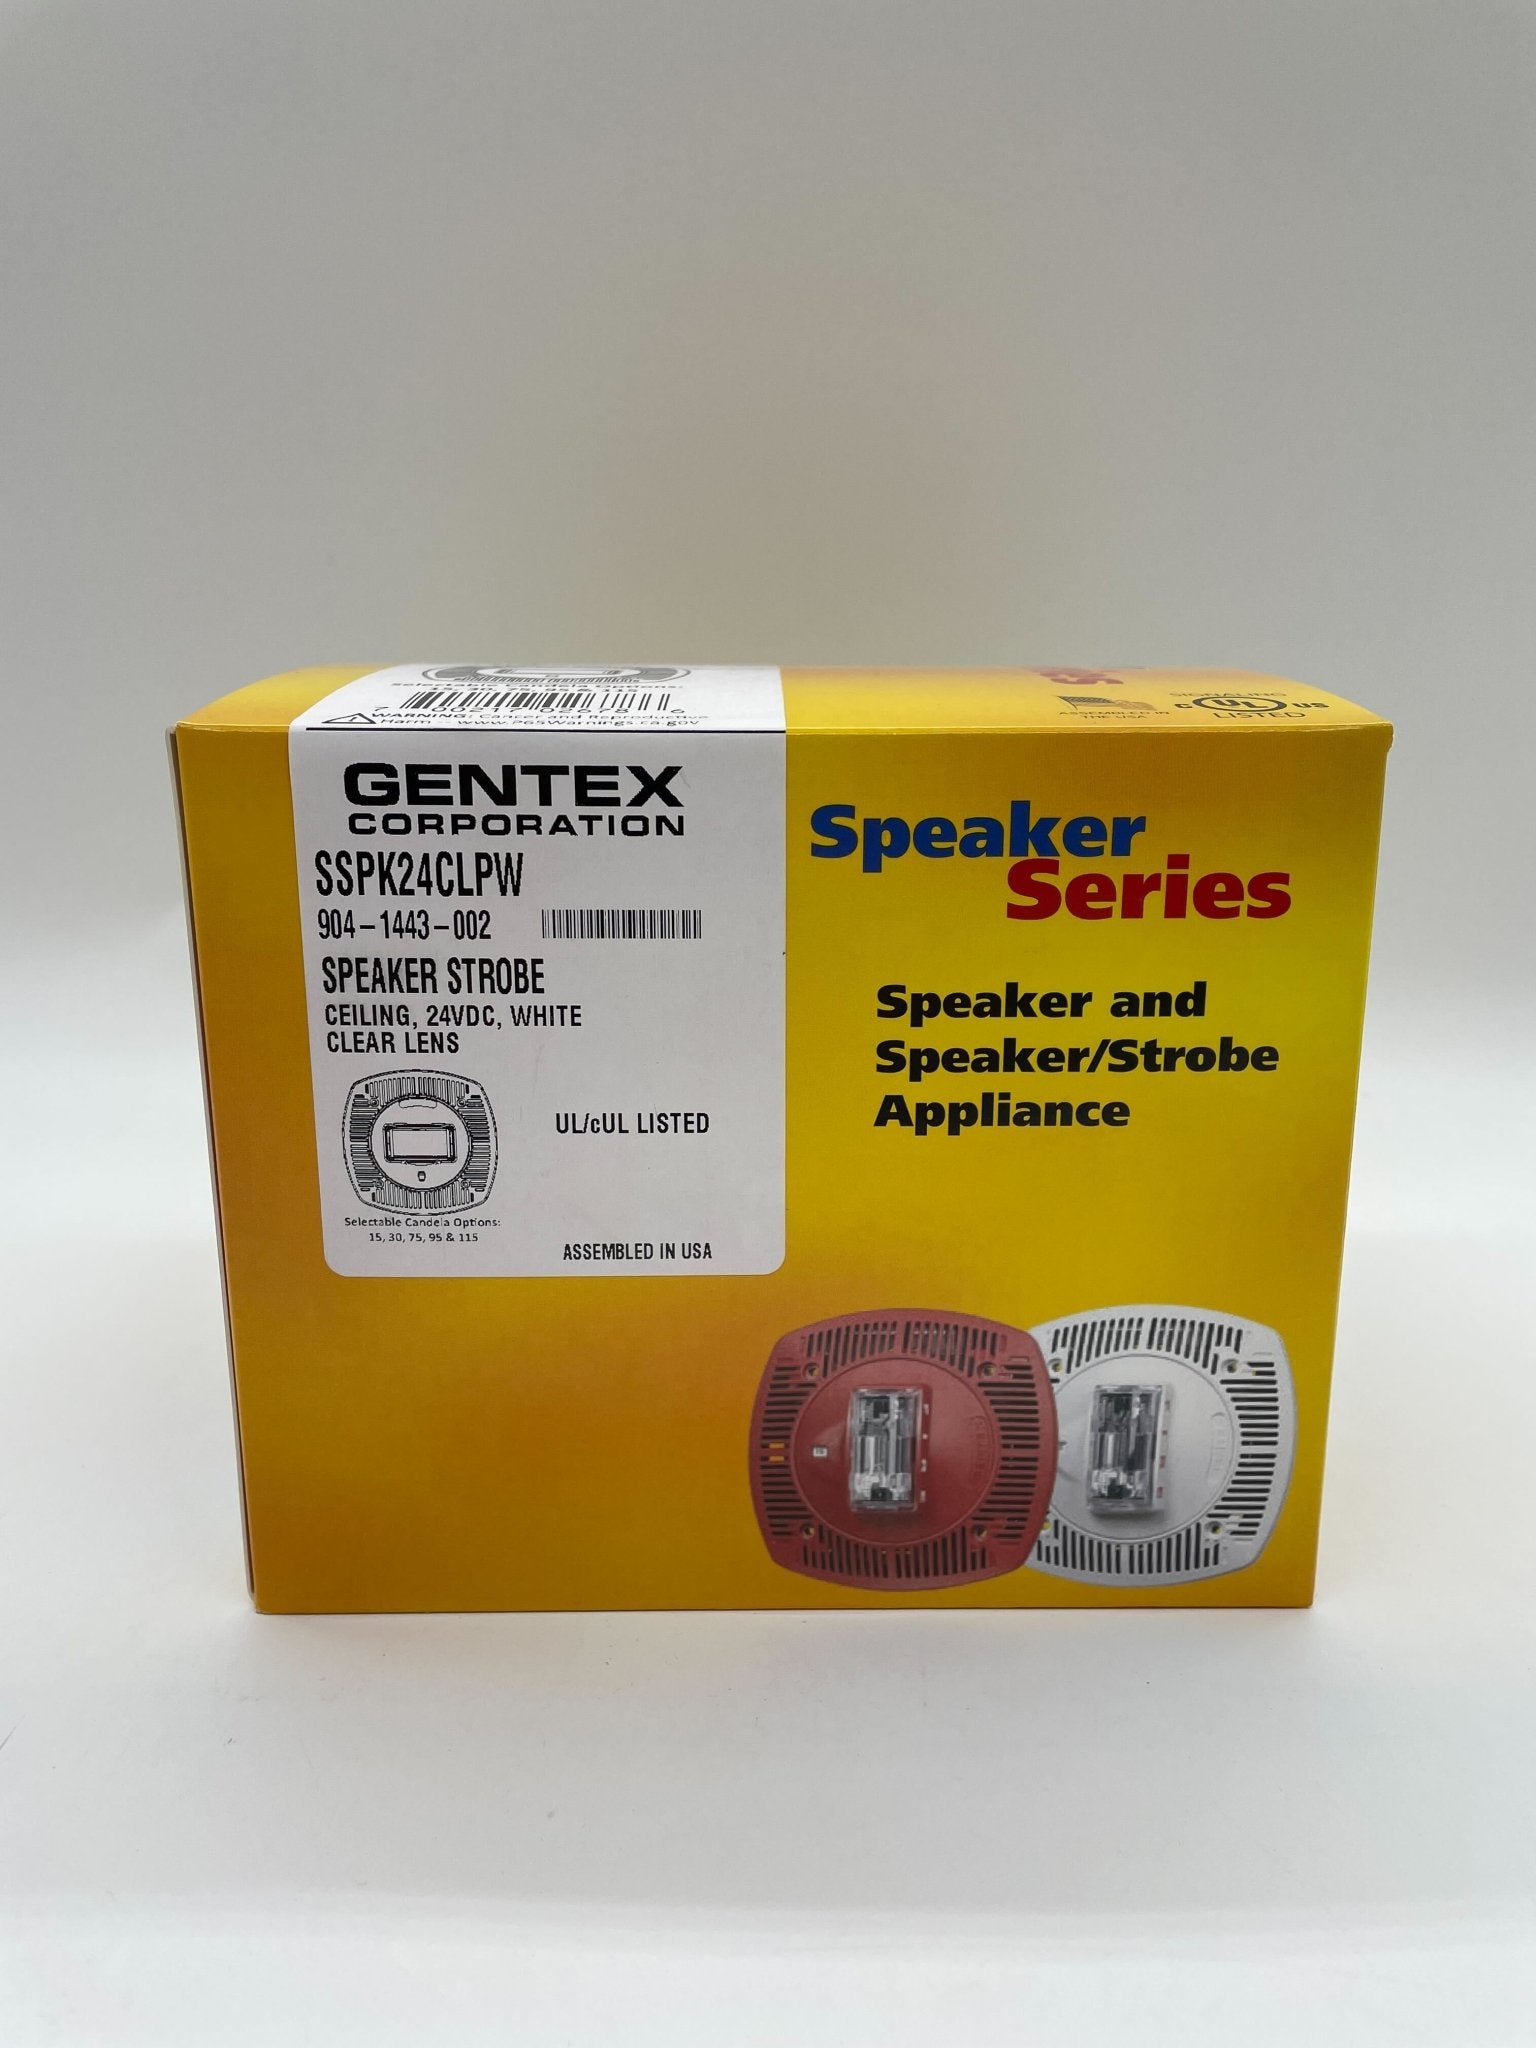 Gentex SSPK24CLPW - The Fire Alarm Supplier